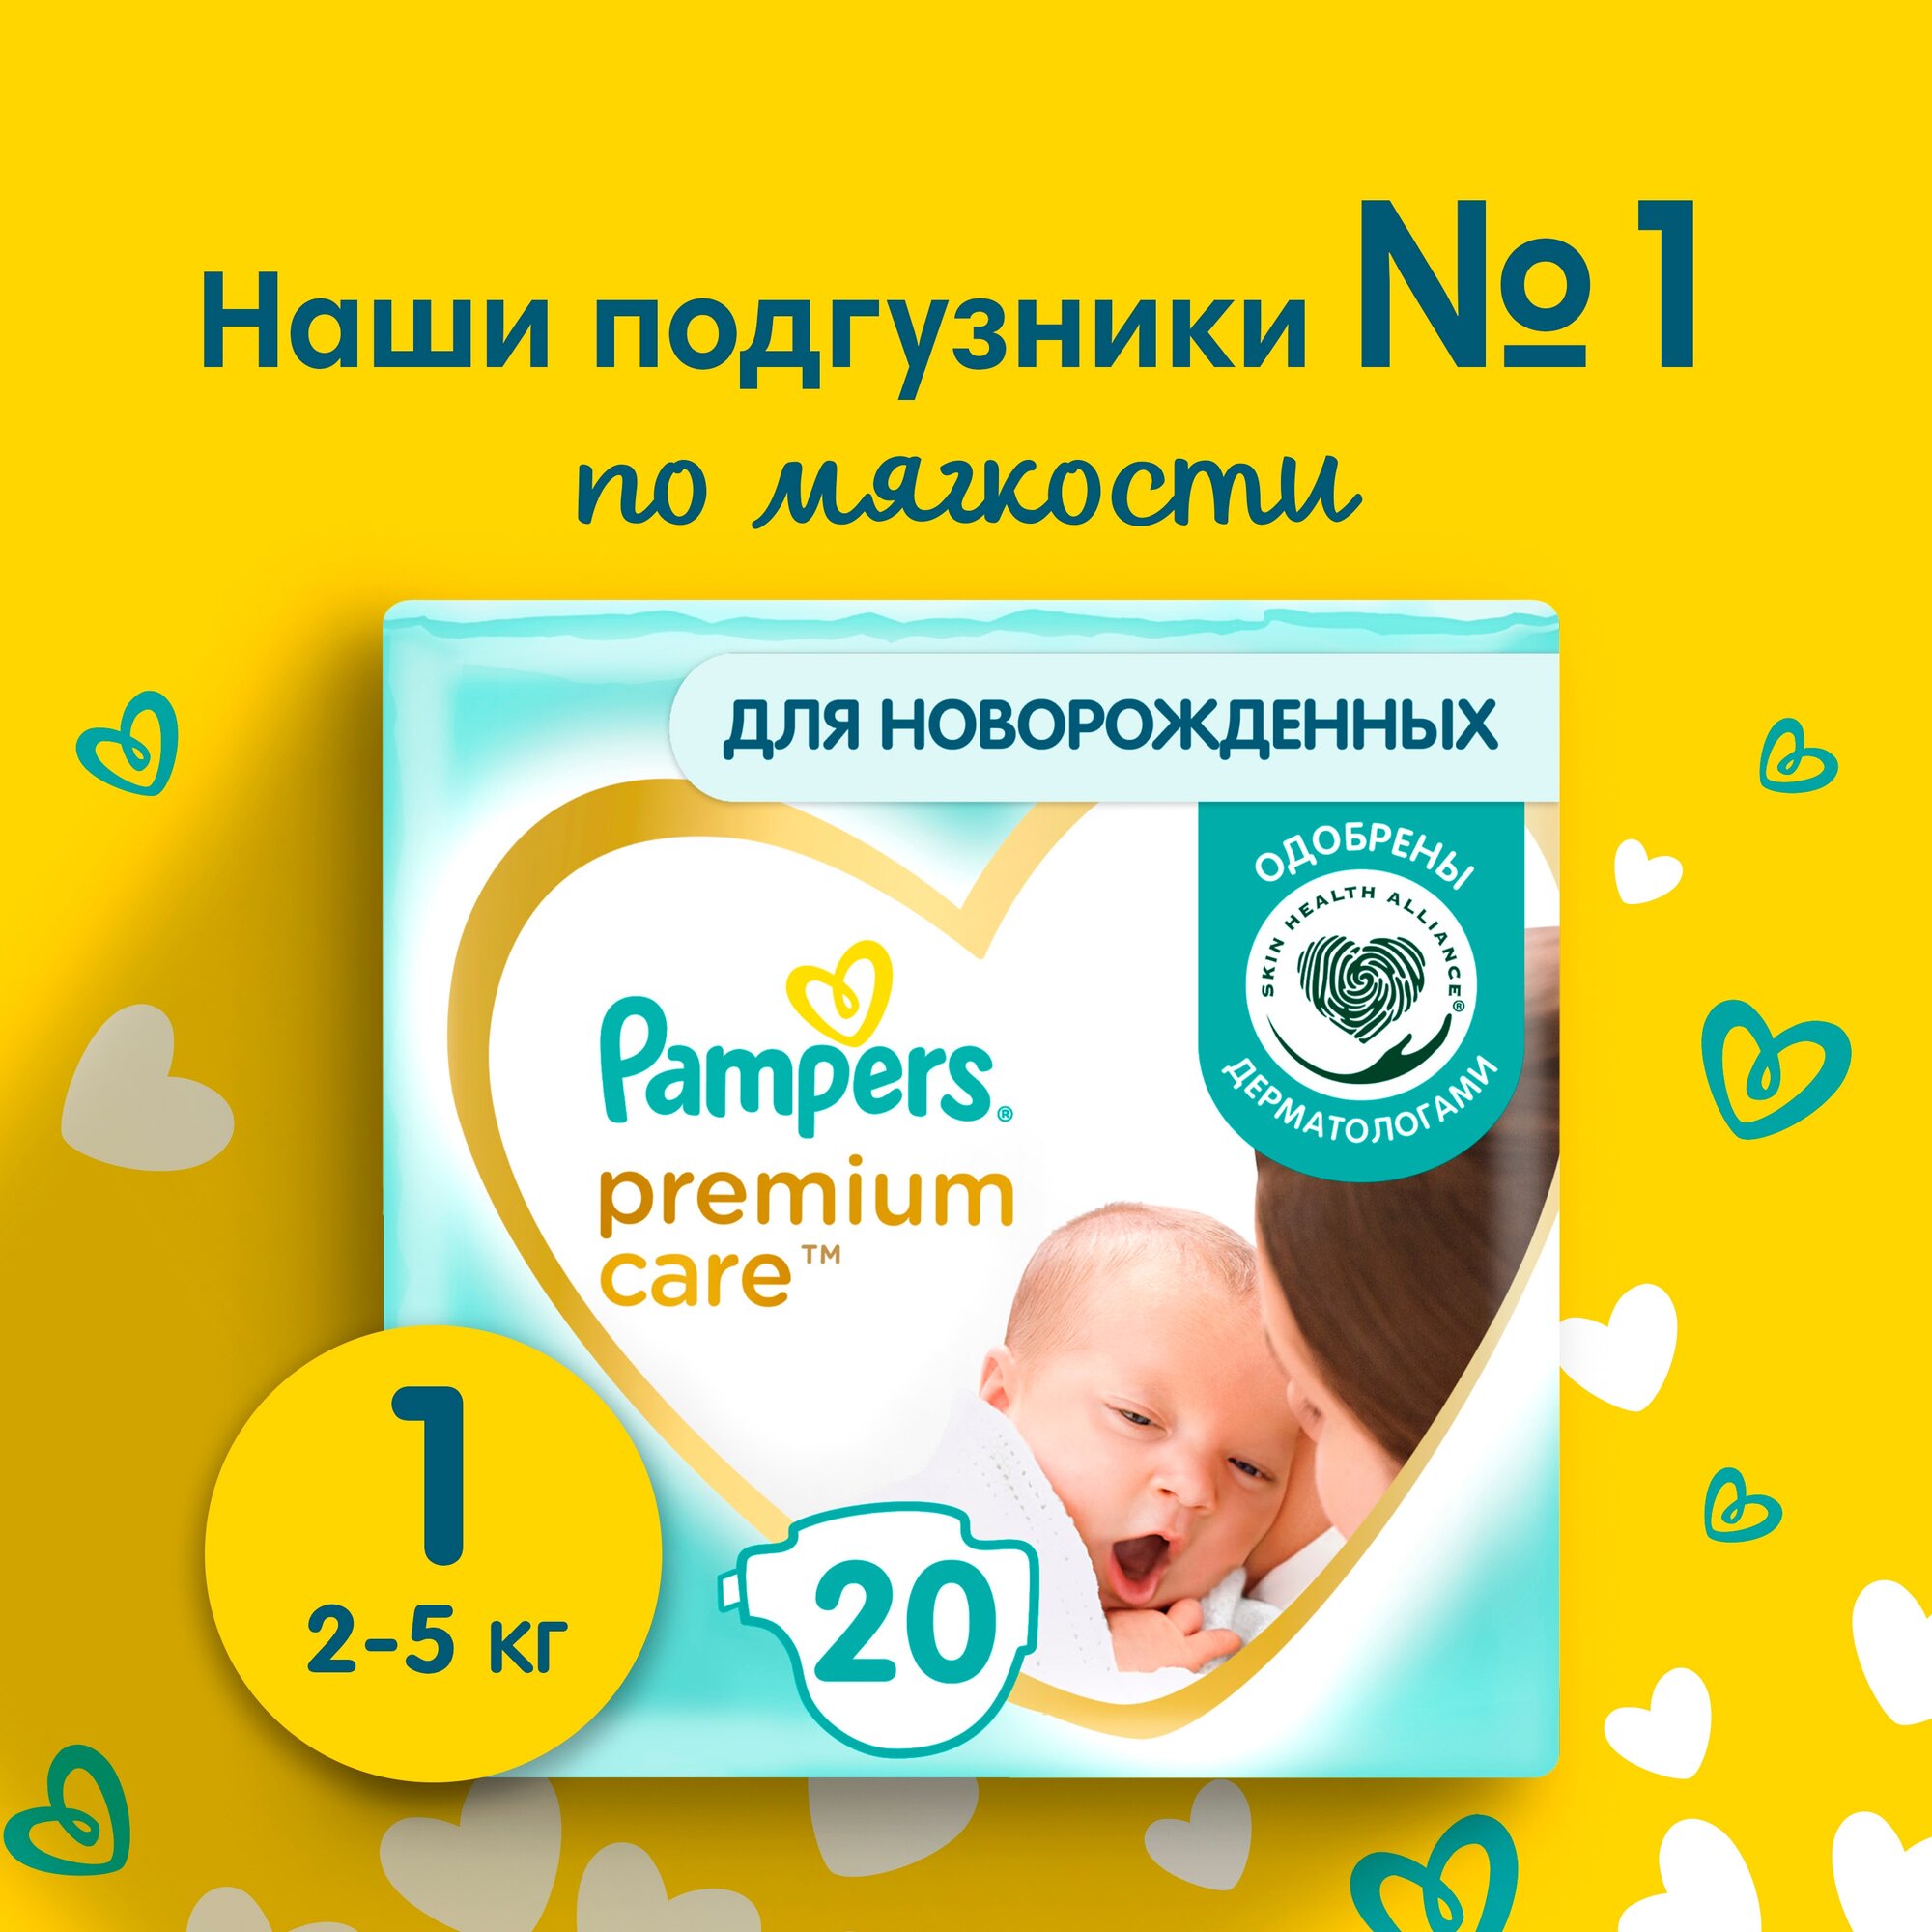 Pampers Premium Care  1, 20 , 2kg-5kg